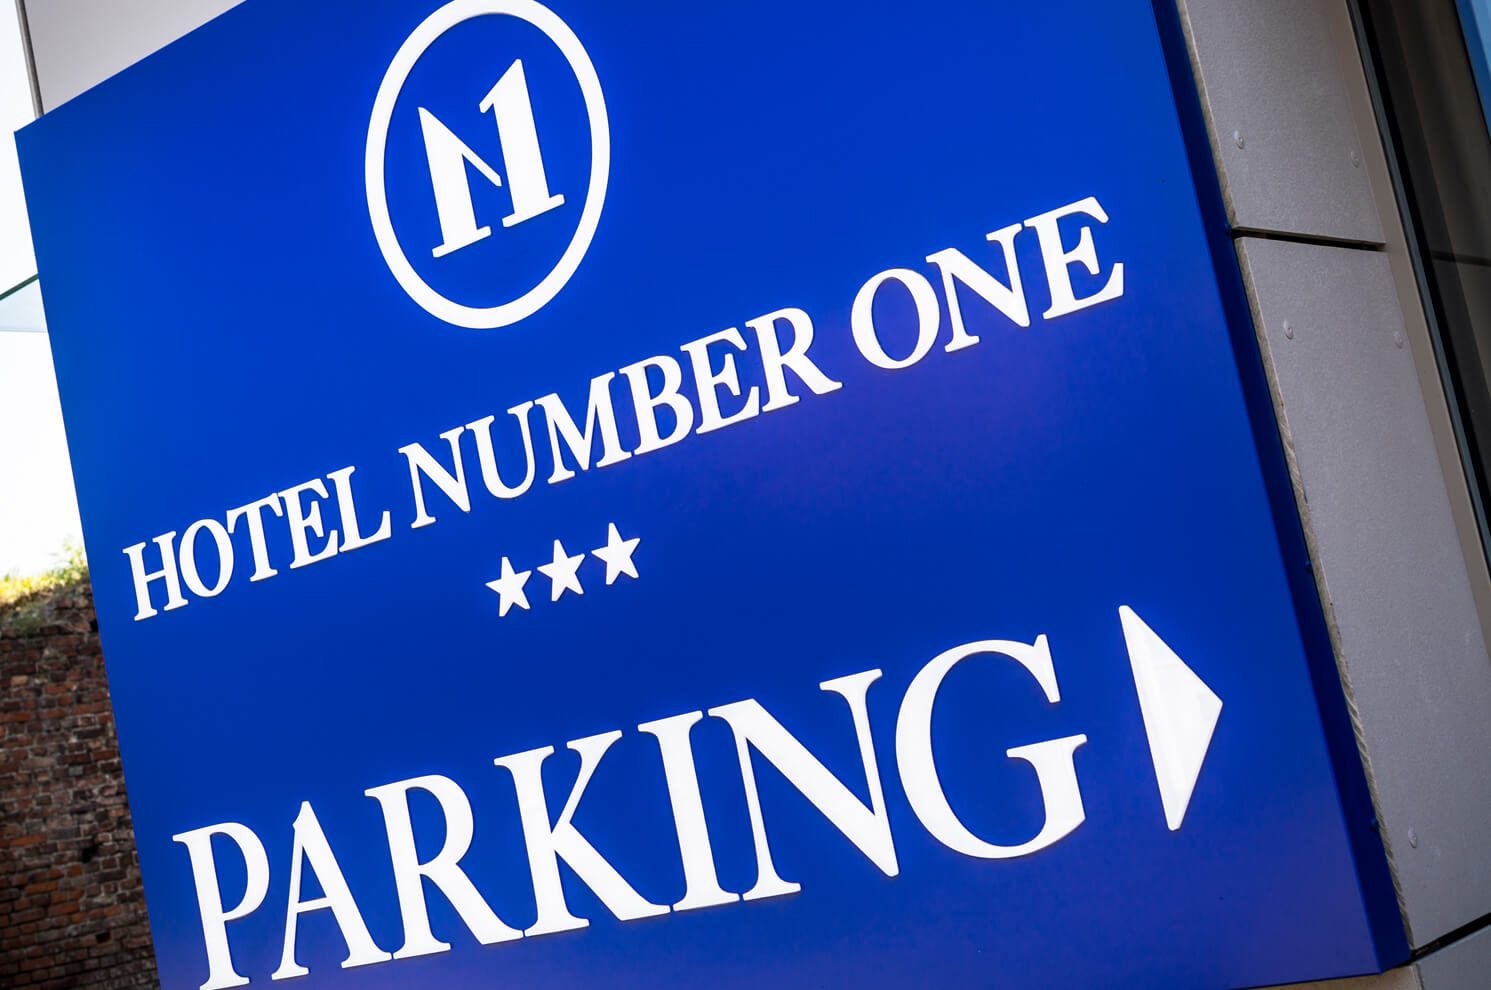 Hotel Nummer 1 - Hotel Number 1 - Ruimtelijke letters op lichtbak